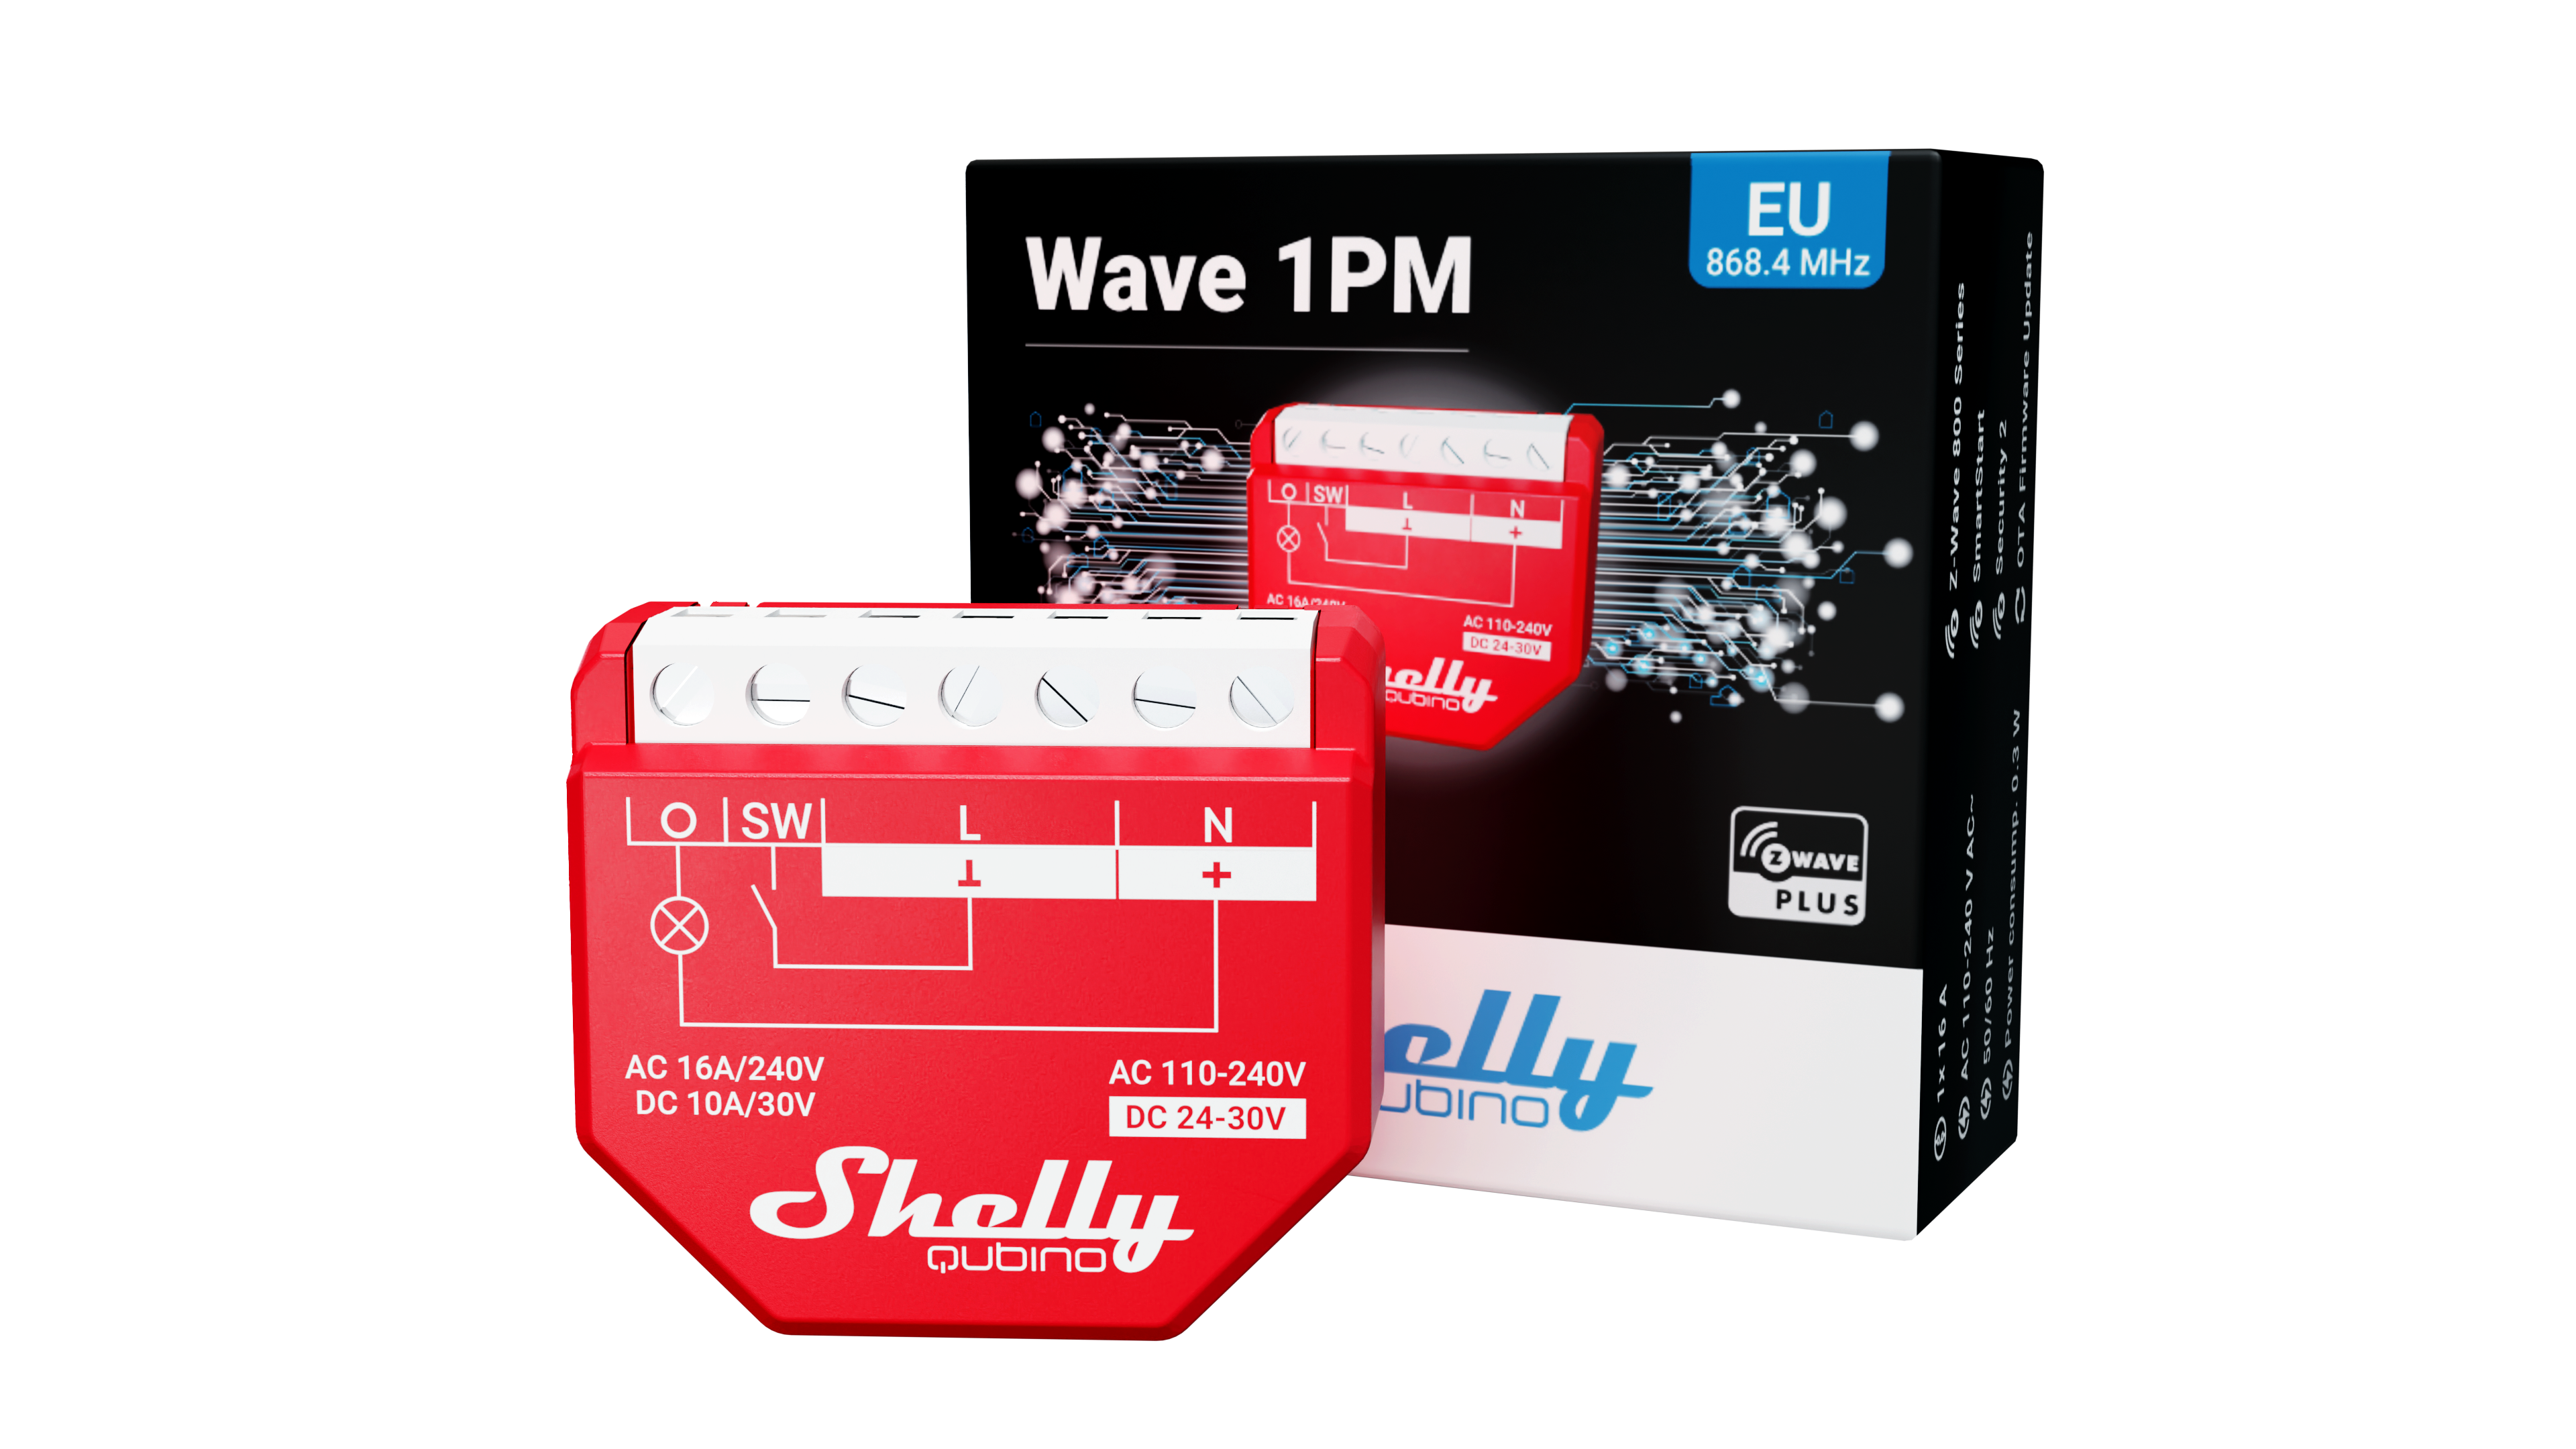 Shelly Wave 1PM WLAN & Bluetooth Relais Schalter mit Strommessung